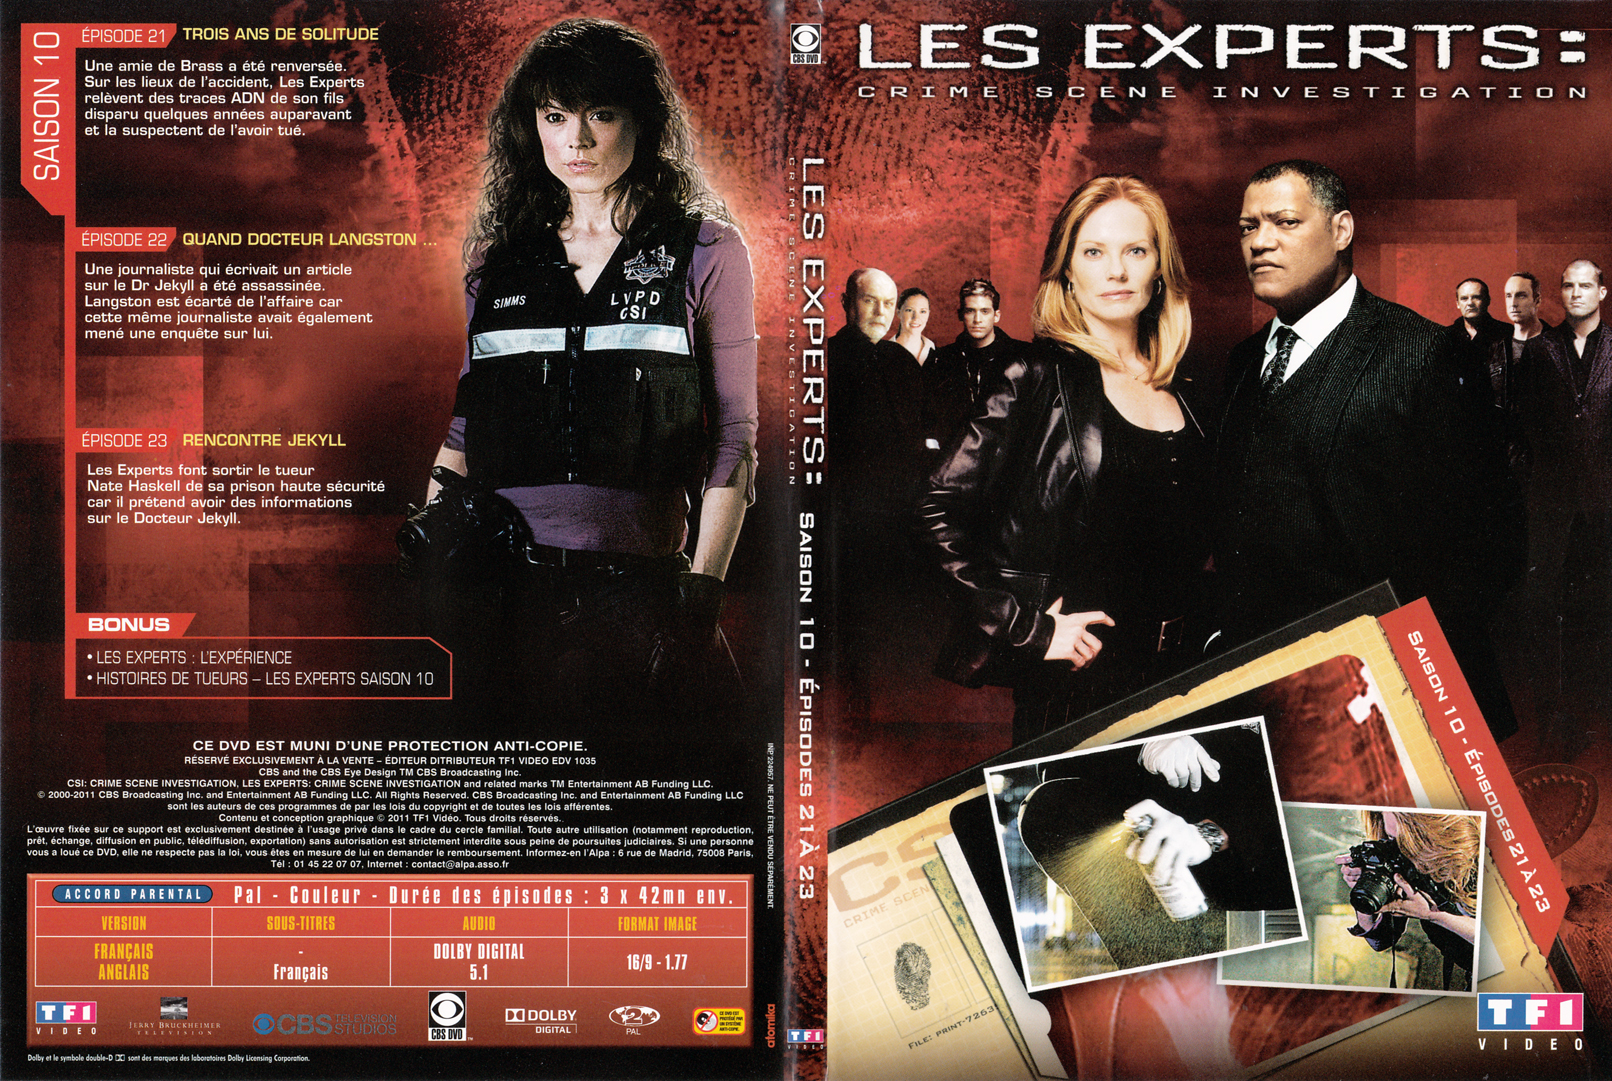 Jaquette DVD Les experts las vegas Saison 10 DVD 06 - SLIM